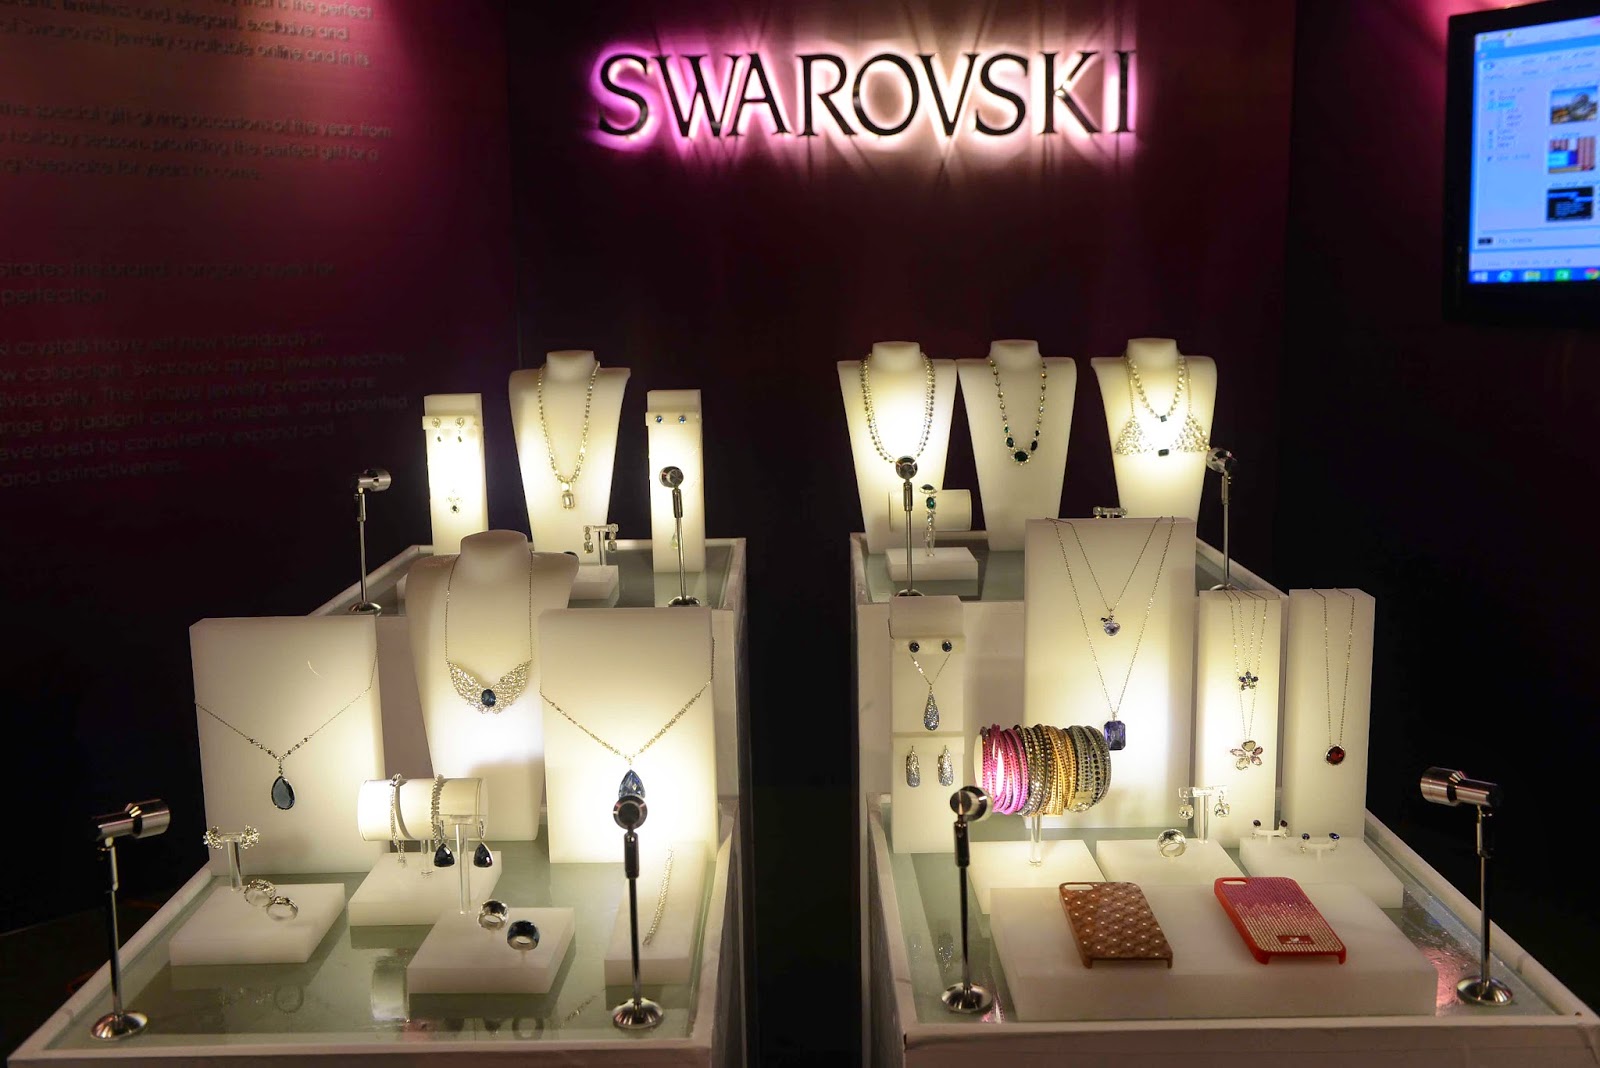 swarovski jewellery and phone cases